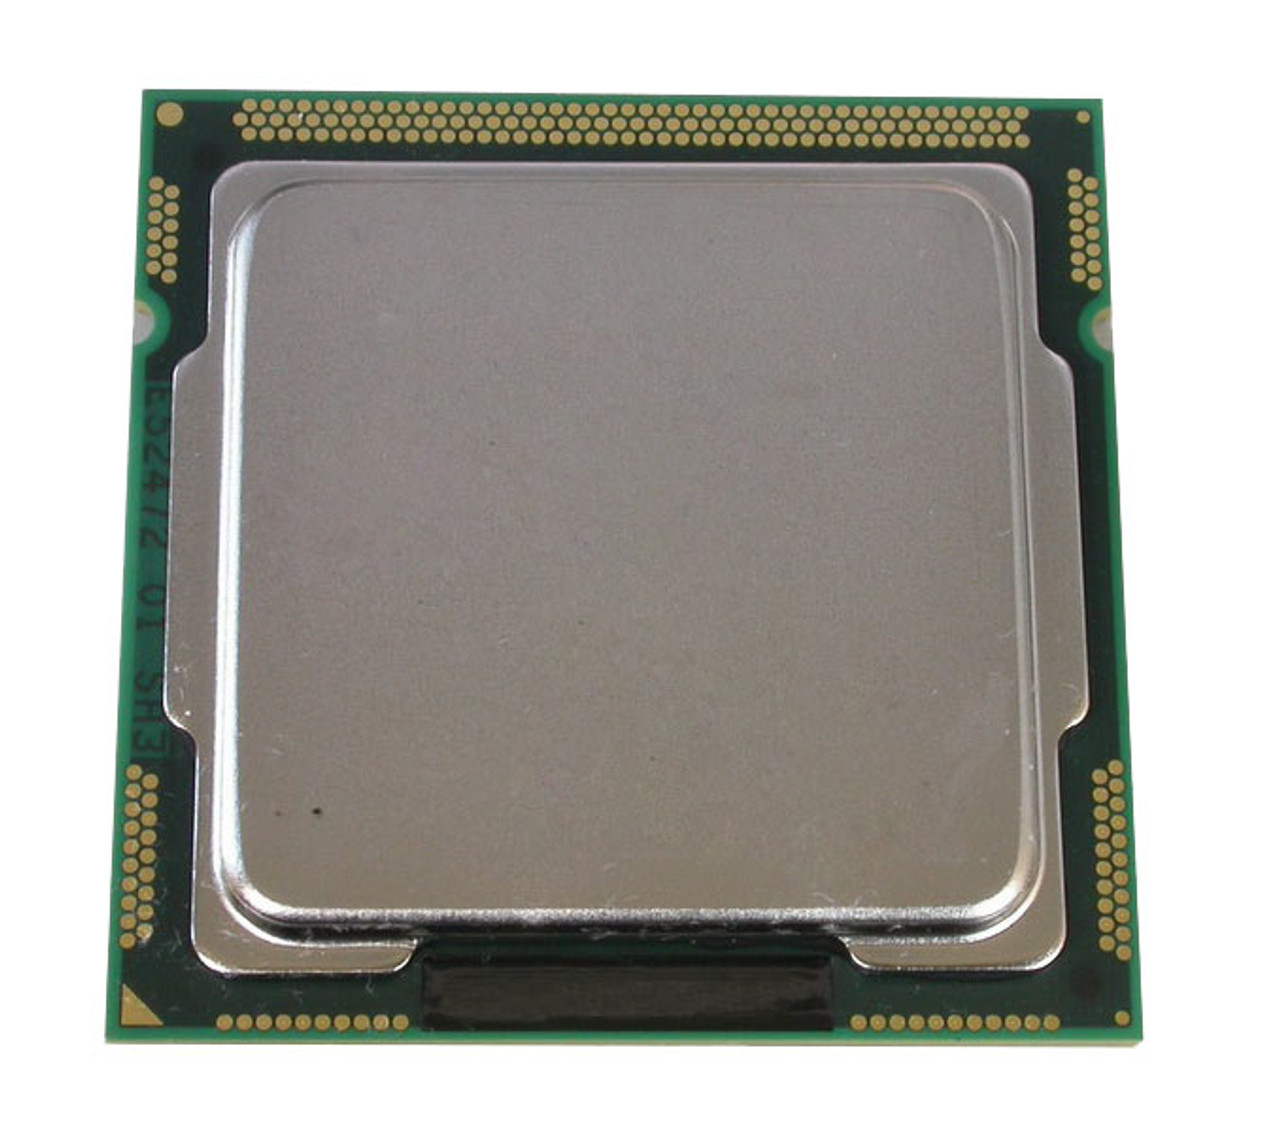 1355969 Intel Core i3-2105 Dual Core 3.10GHz 5.00GT/s DMI 3MB L3 Cache Socket LGA1155 Desktop Processor